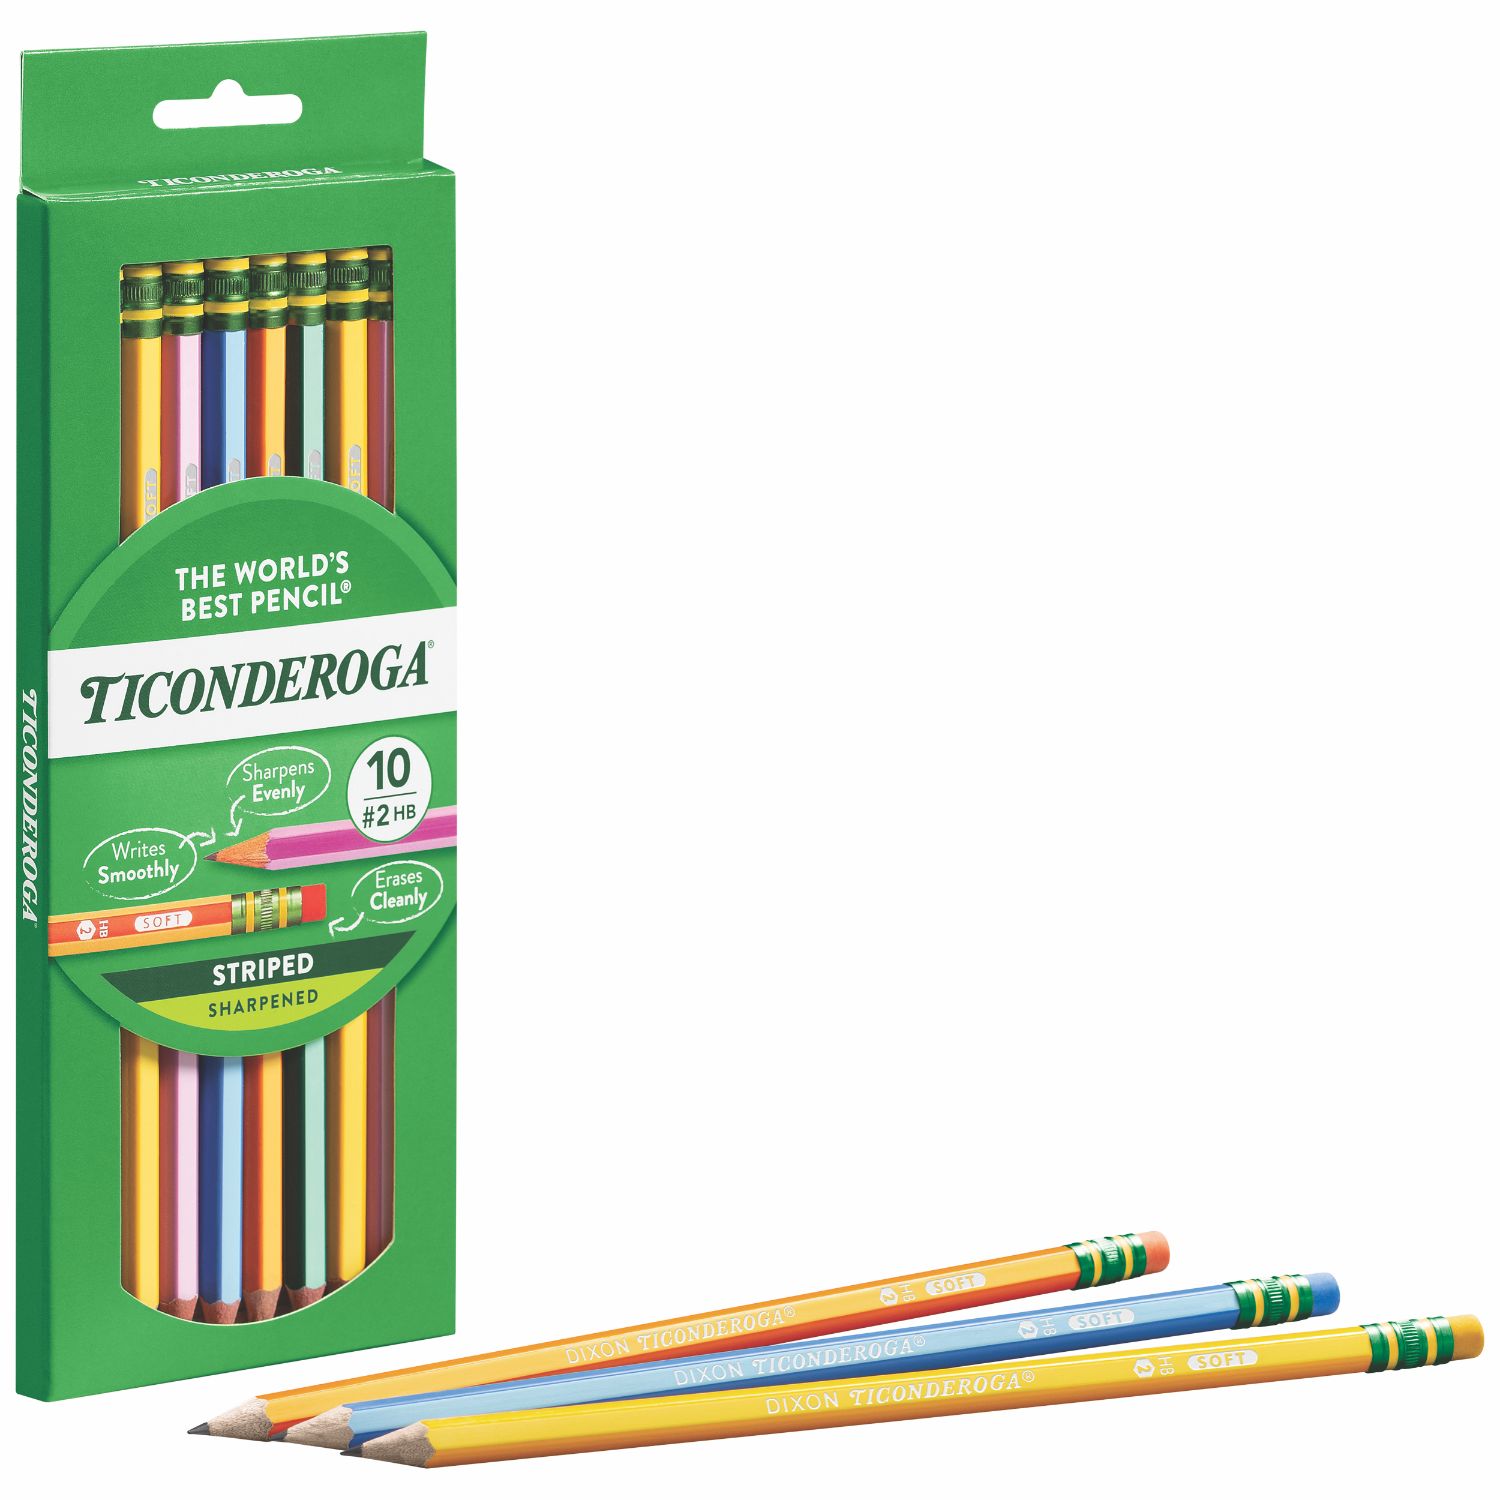 10 ct. Neon Colored Pencils - Bright Colored Pencils